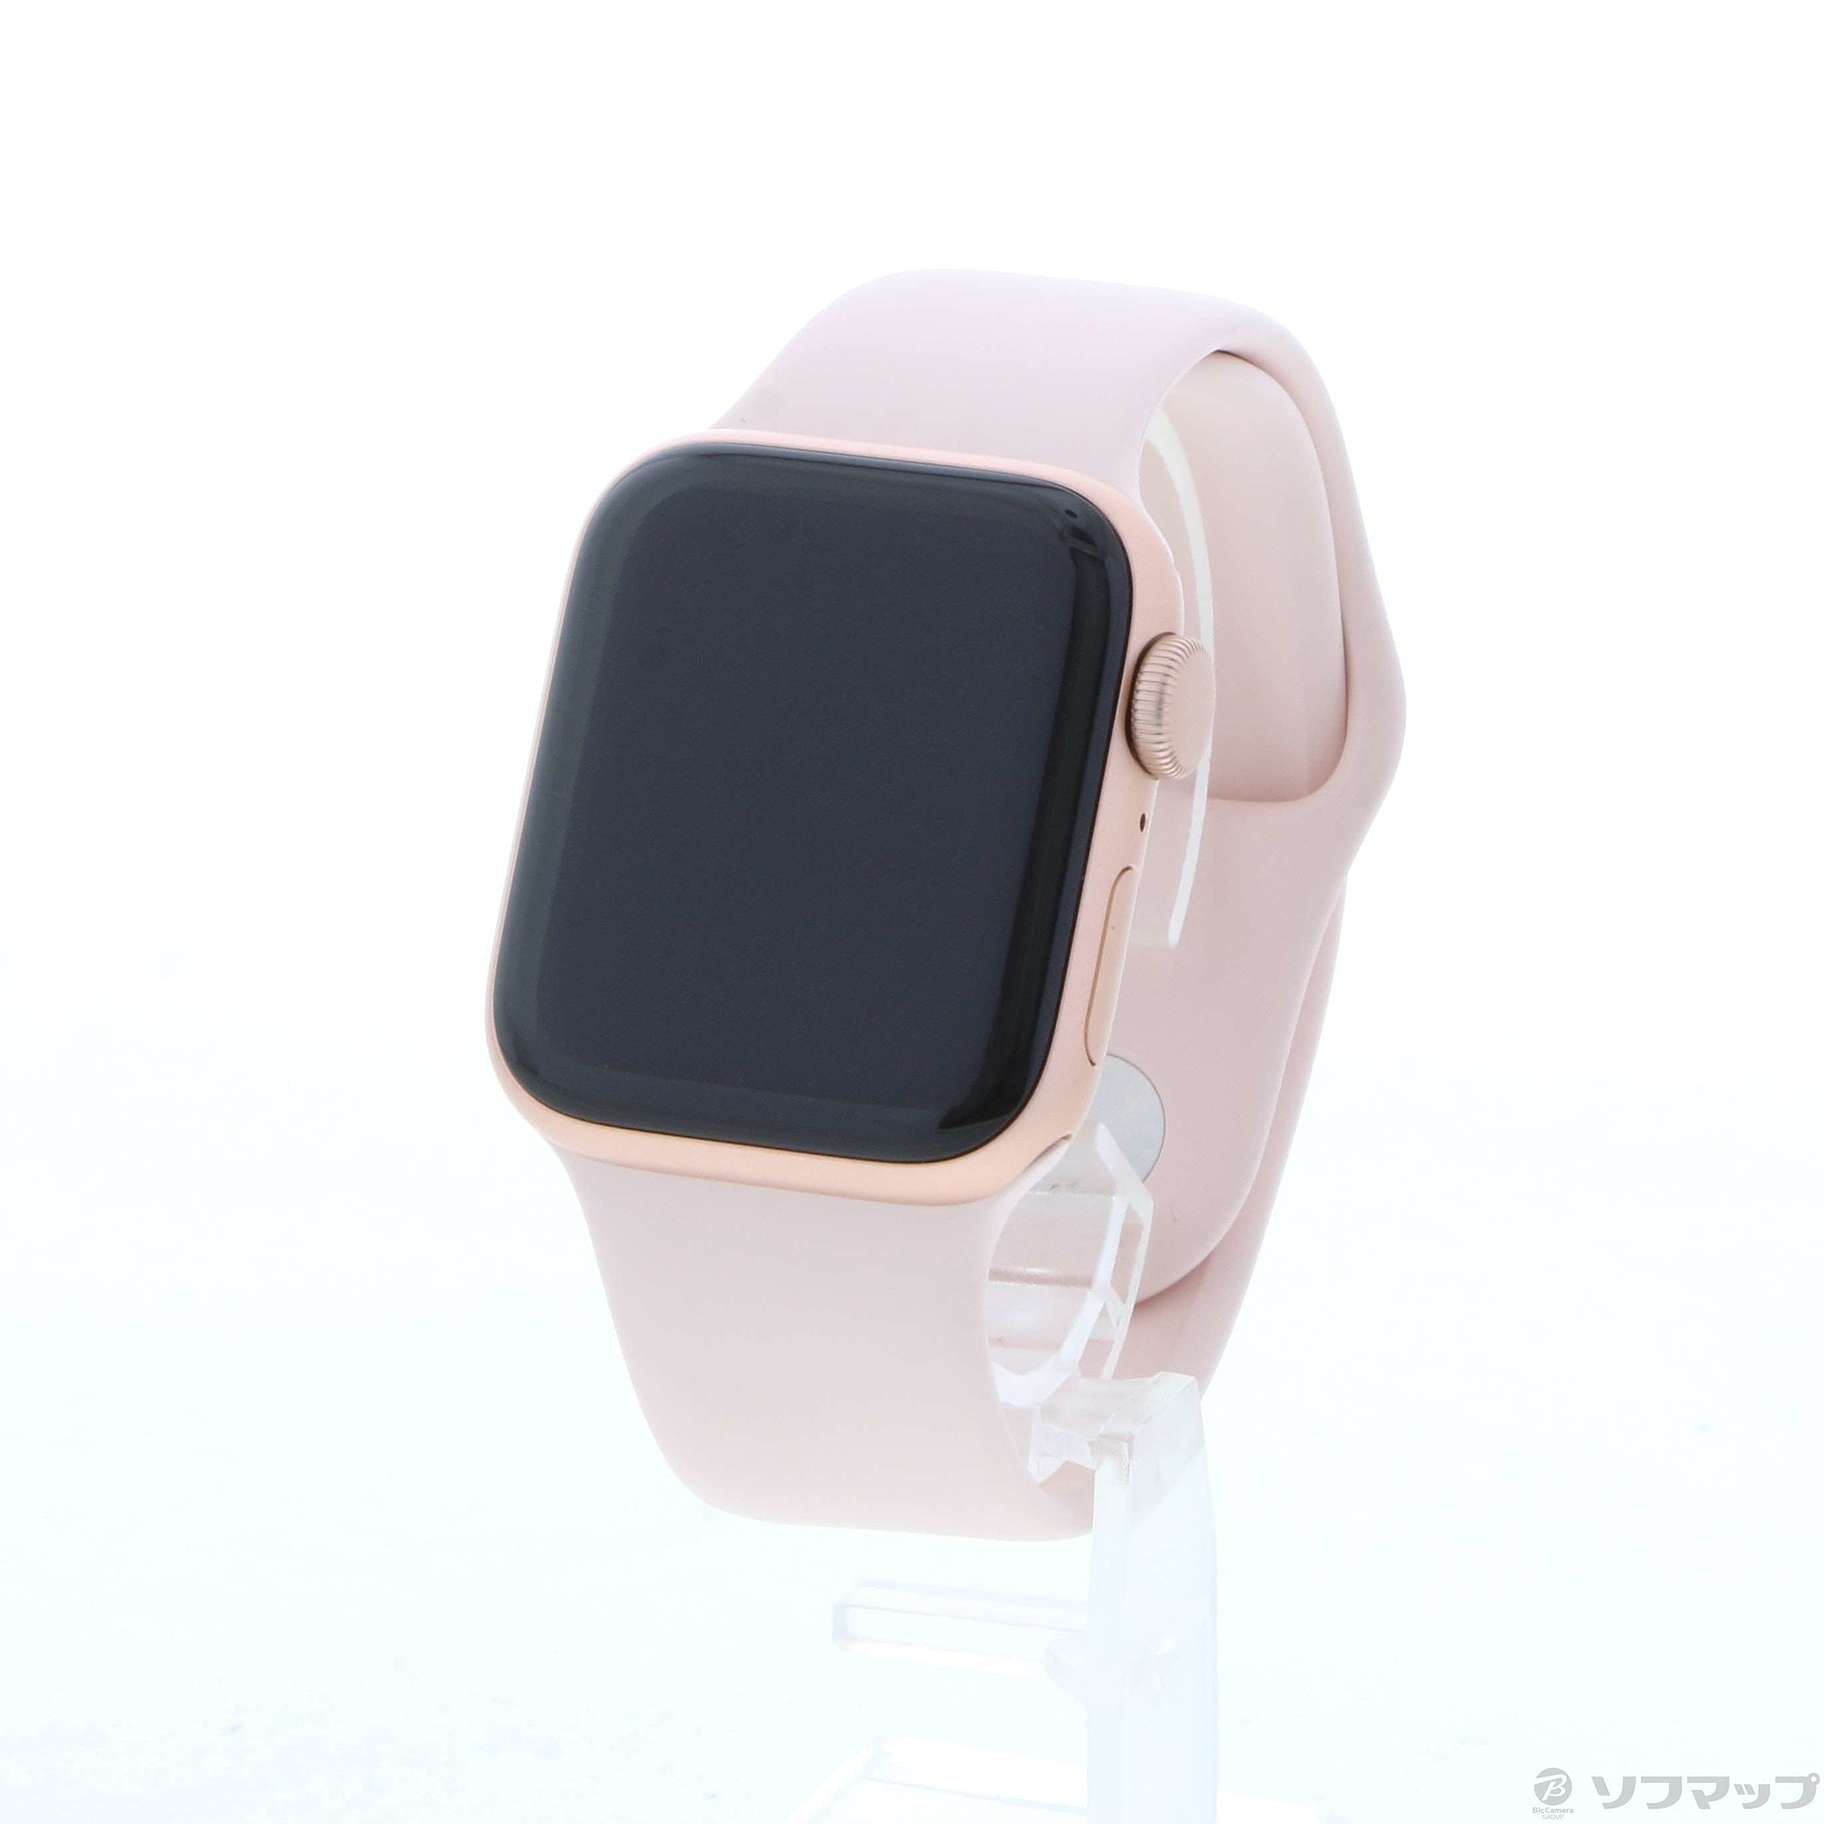 新発売の Apple Watch スポーツバンド ピンク